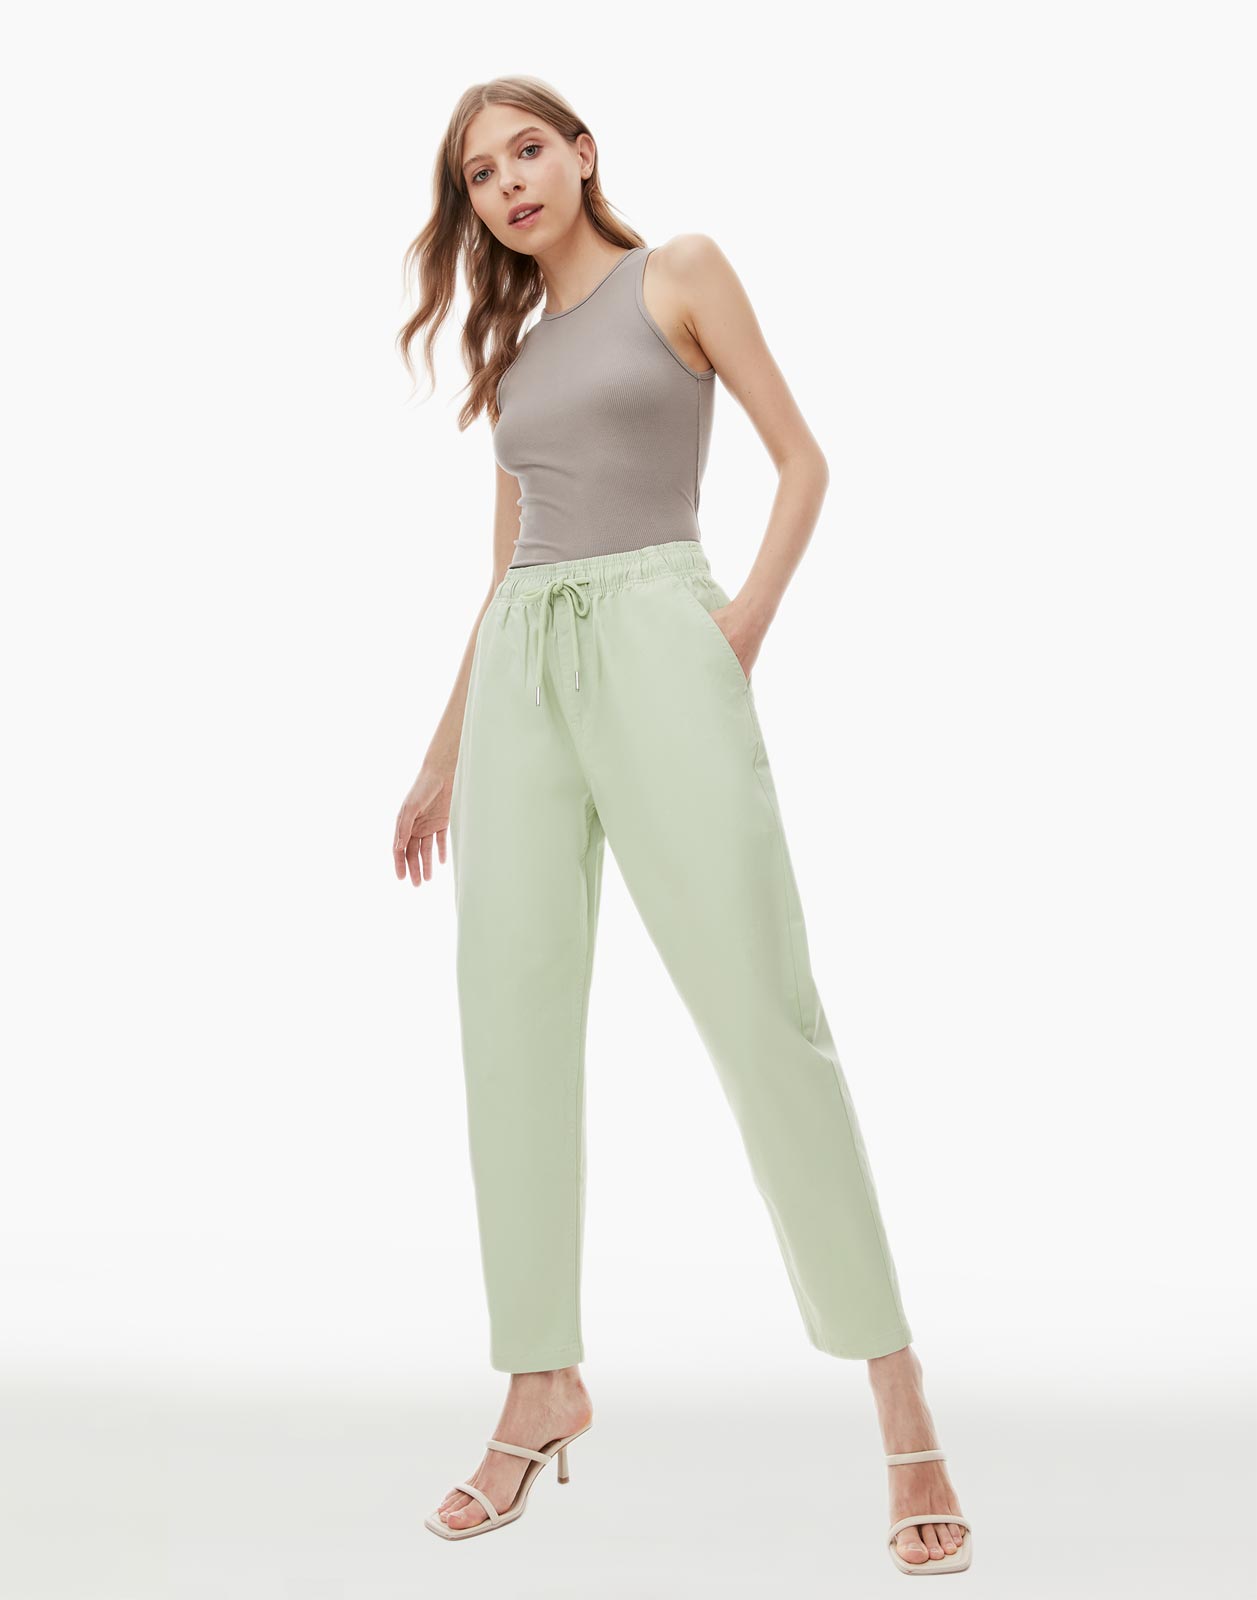 Джинсы женские Gloria Jeans GJN026682 зеленые XL